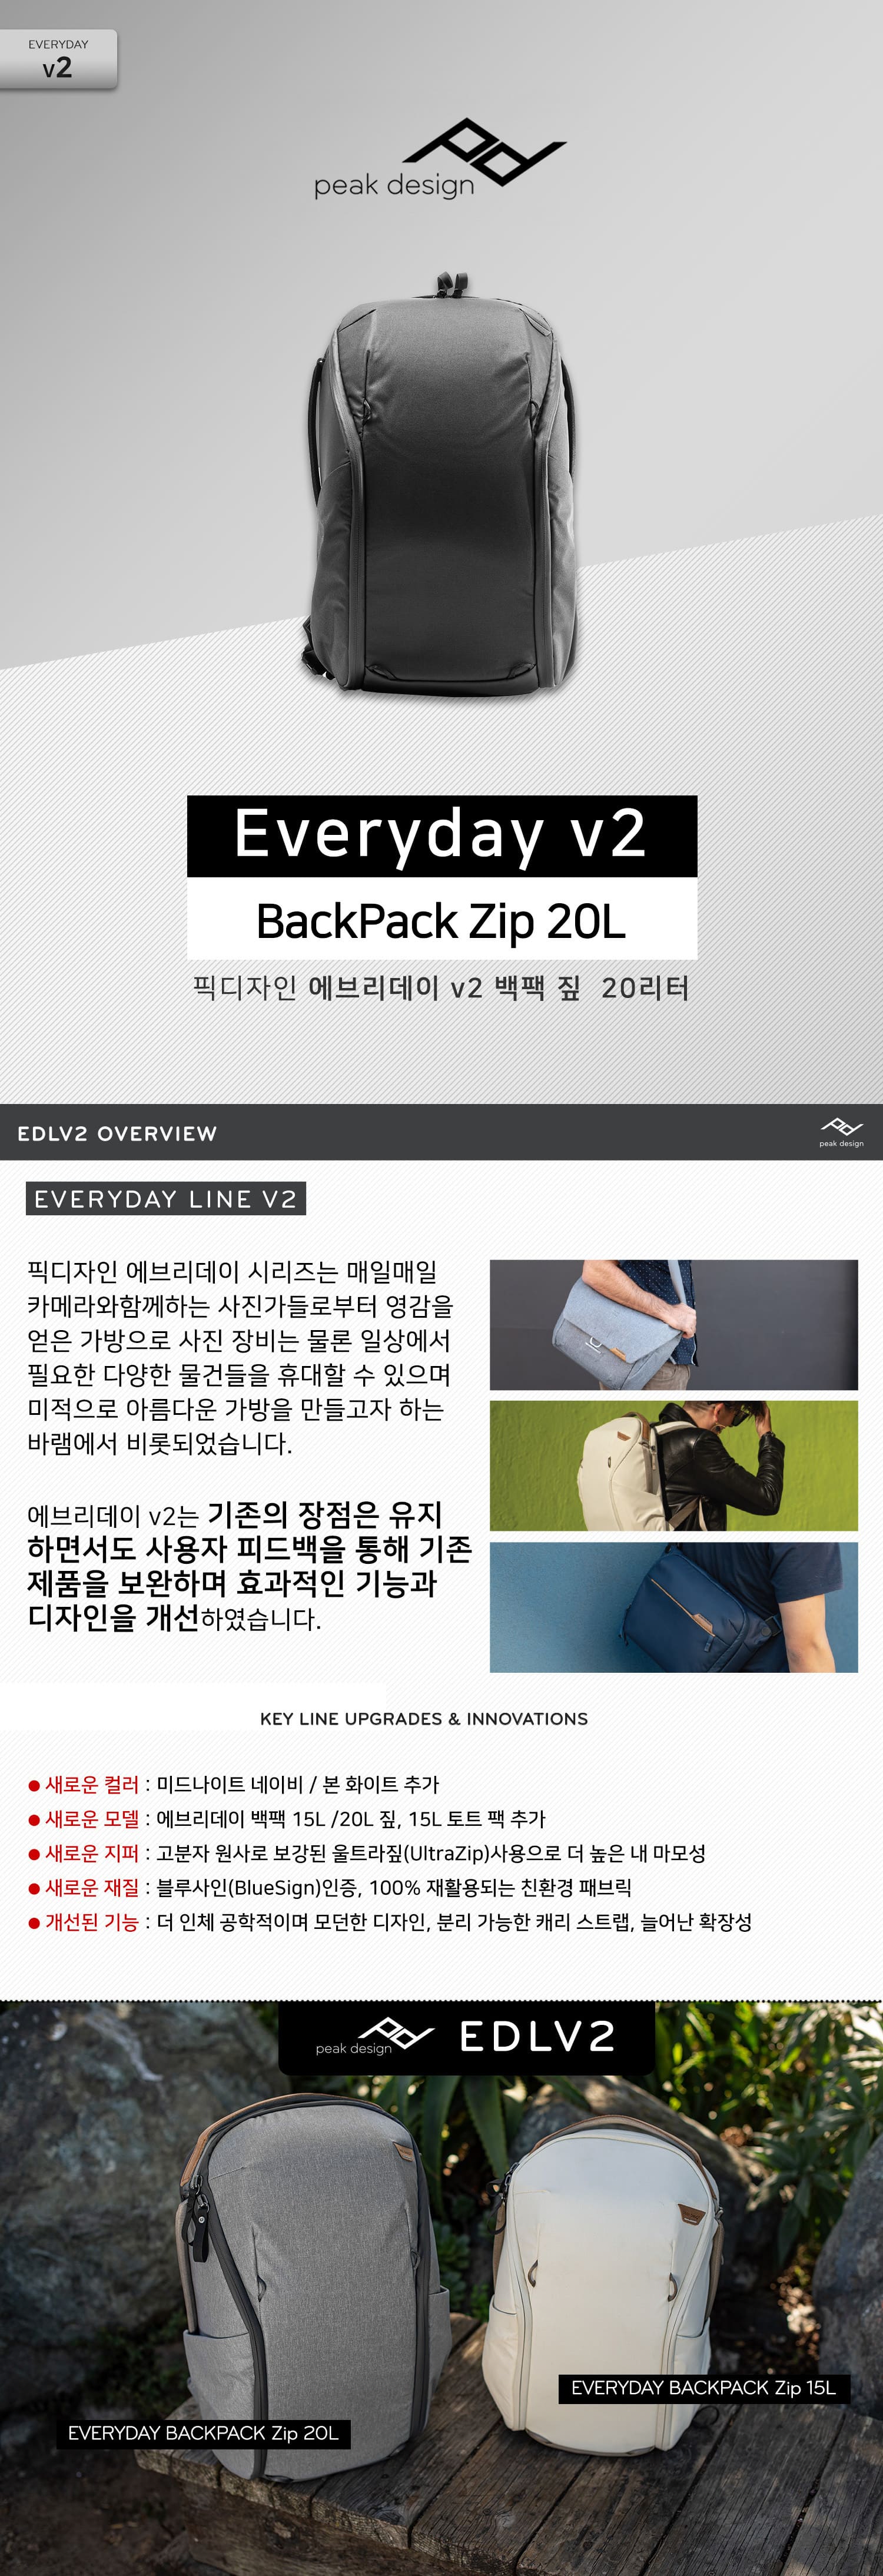 peak design Everyday v2 Backpack Zip 20L Black   긮 v2  ¤ 20L 